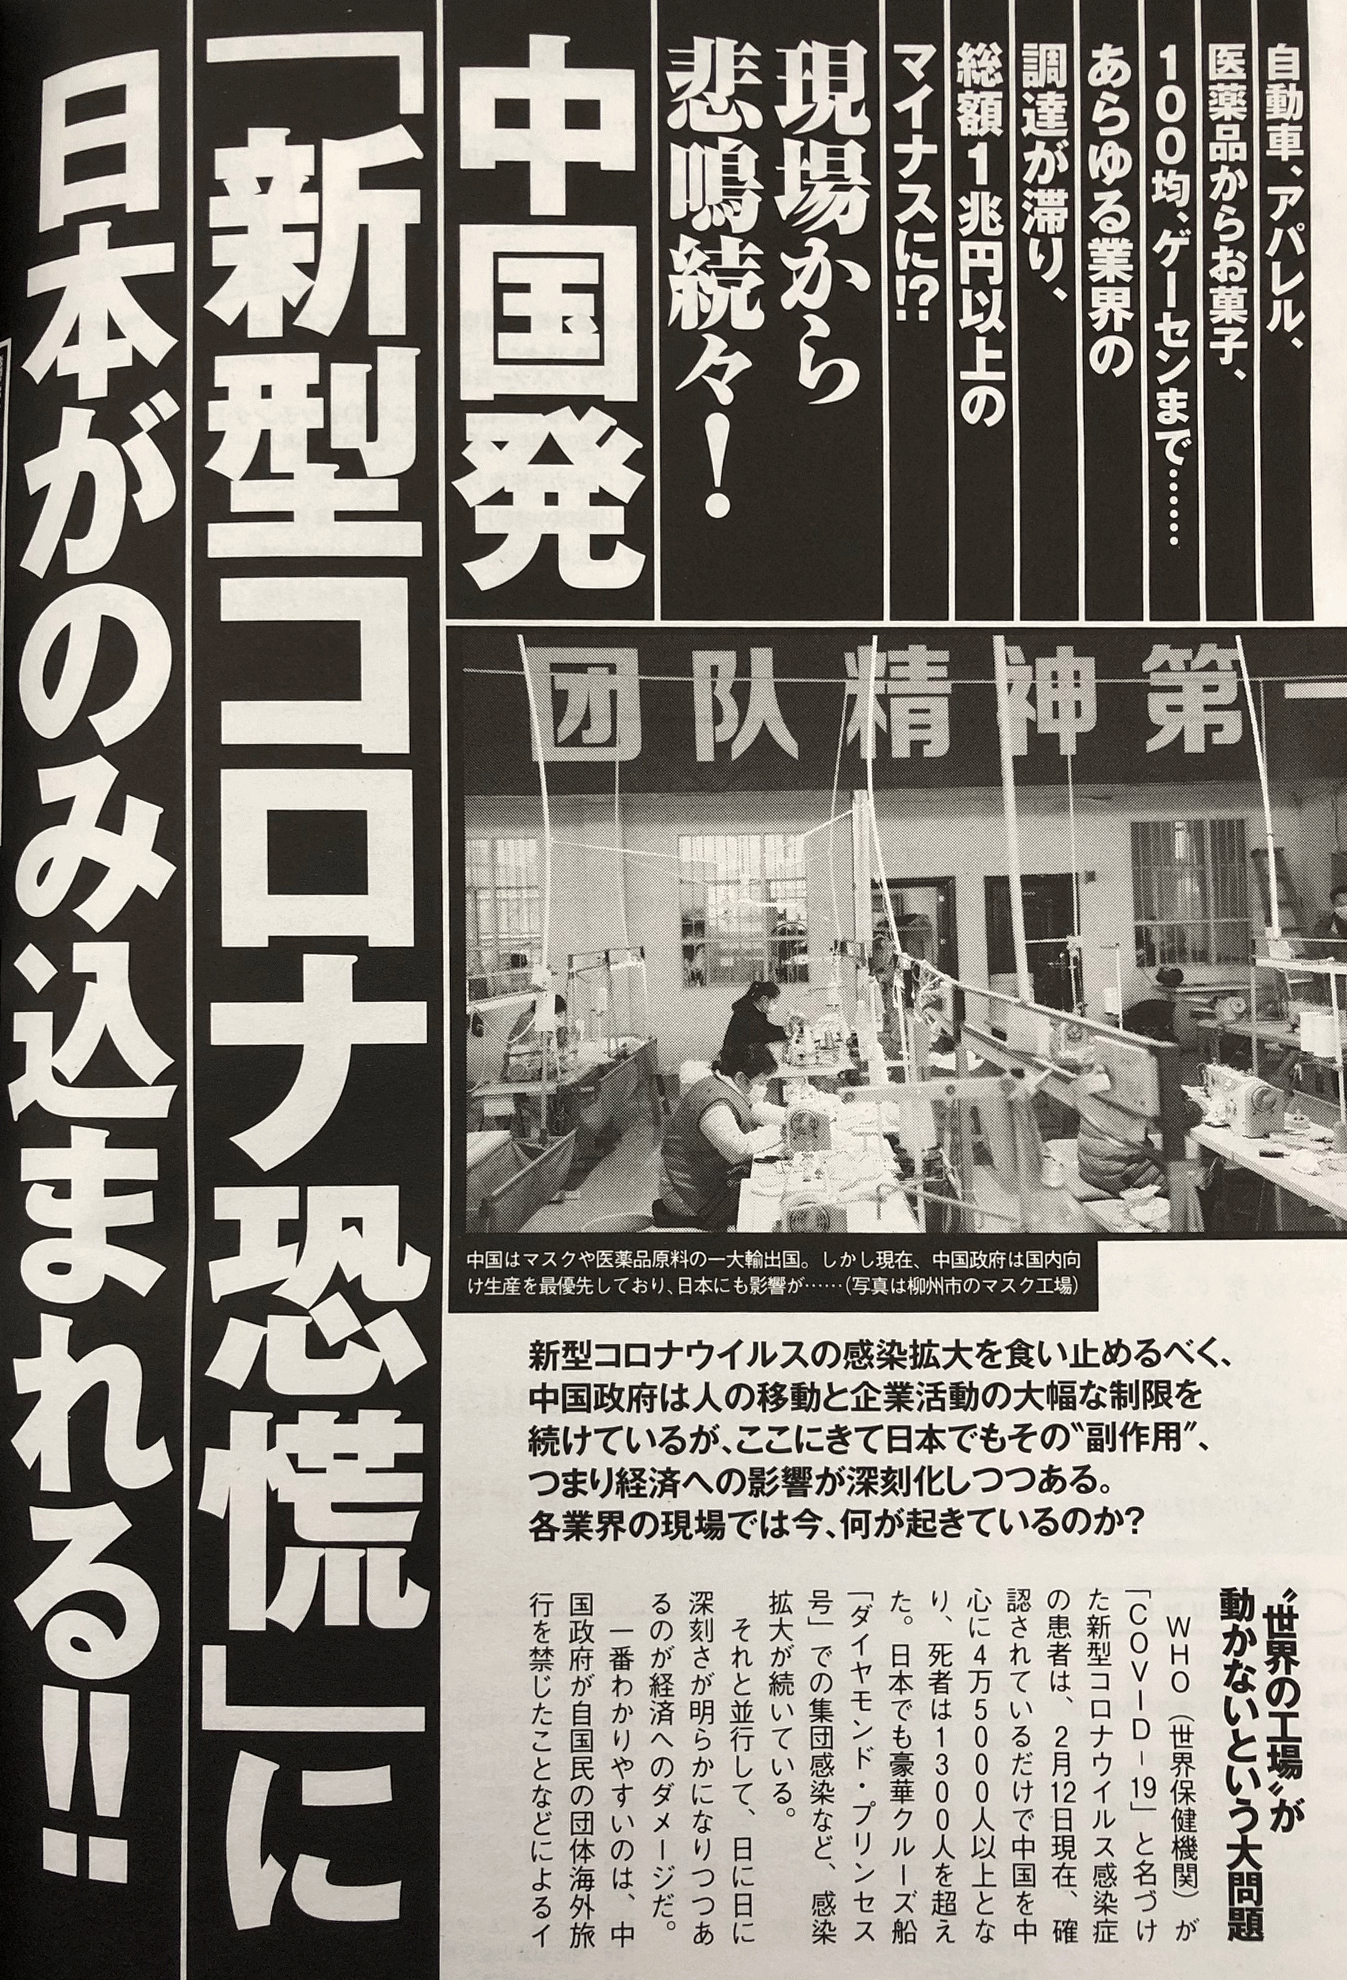 中国発 「新型コロナ恐慌」に 日本がのみ込まれる!!